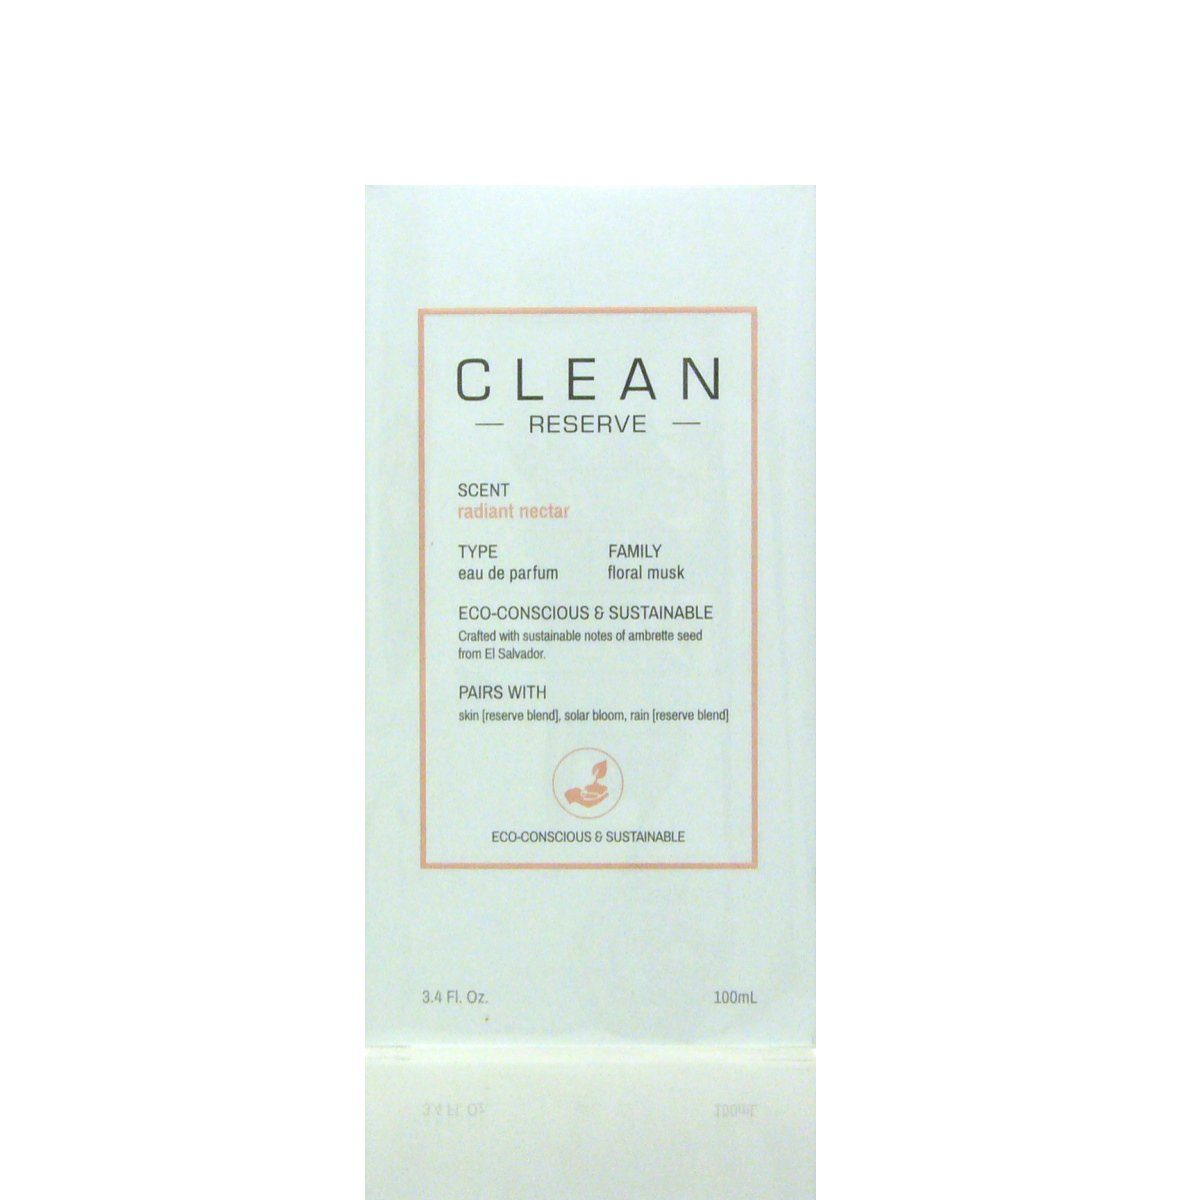 Clean Eau Radiant ml de 100 Eau de CLEAN Reserve Parfum Parfum Nectar